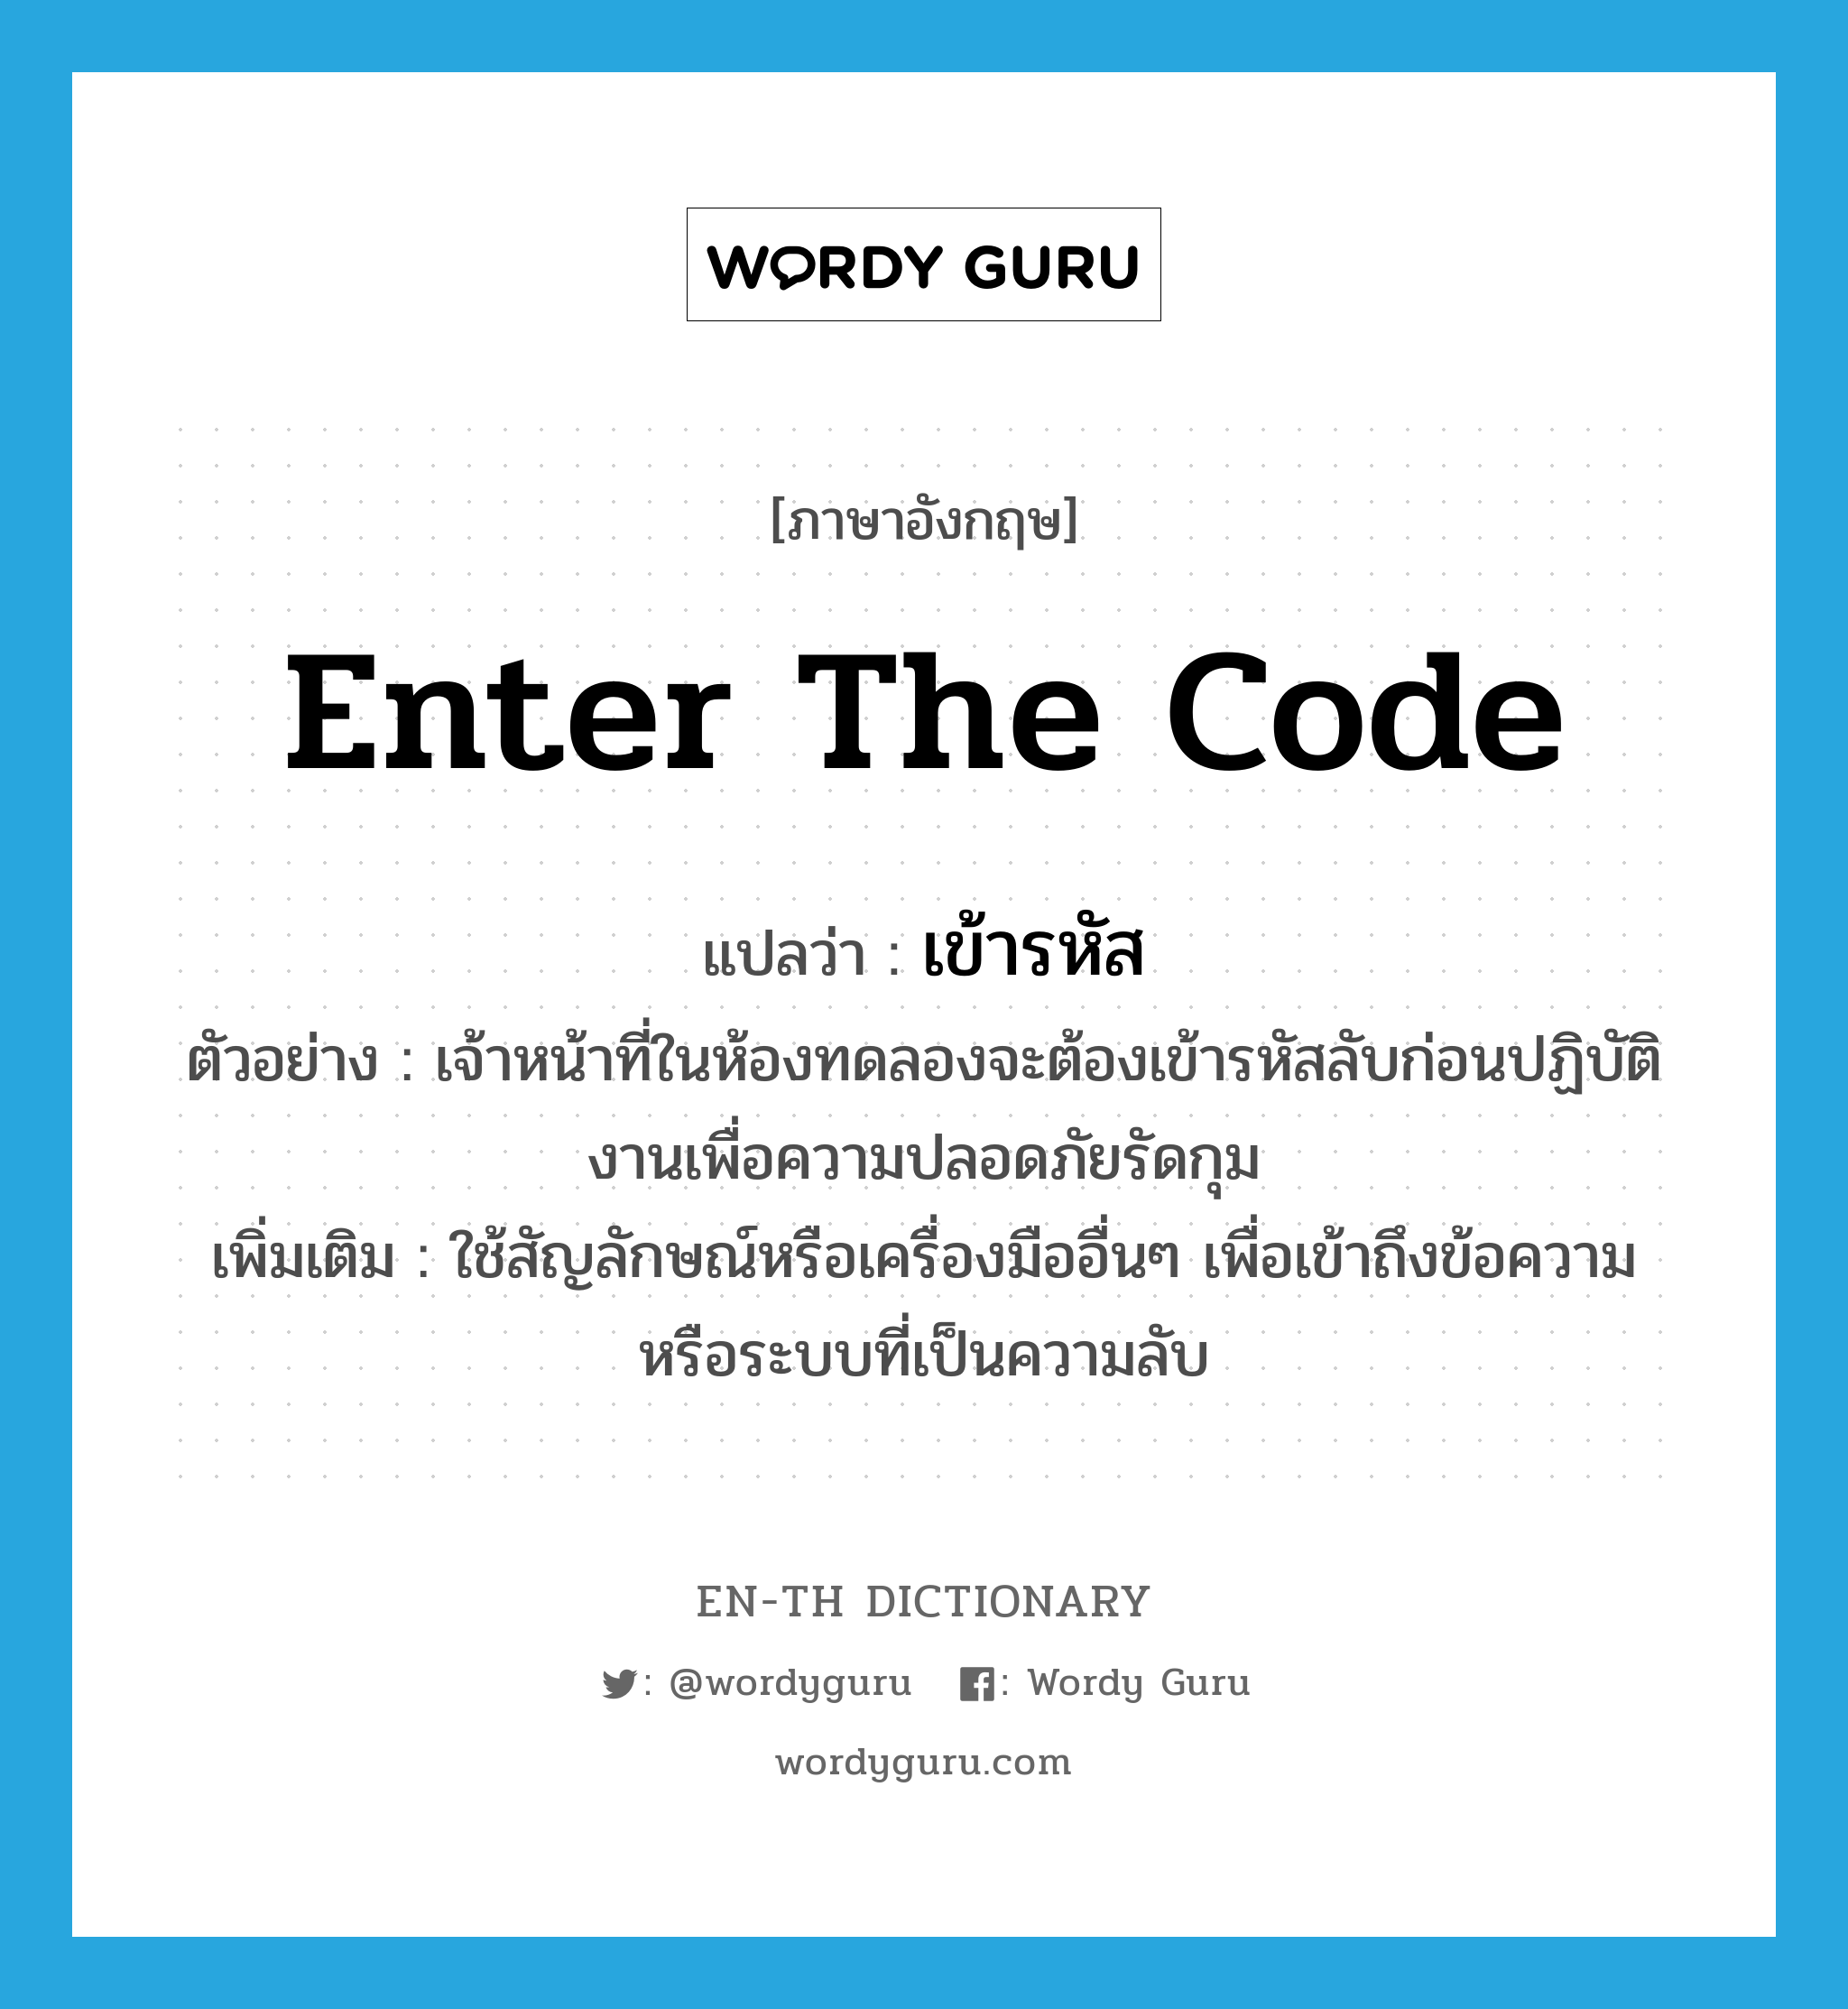 enter the code แปลว่า?, คำศัพท์ภาษาอังกฤษ enter the code แปลว่า เข้ารหัส ประเภท V ตัวอย่าง เจ้าหน้าที่ในห้องทดลองจะต้องเข้ารหัสลับก่อนปฏิบัติงานเพื่อความปลอดภัยรัดกุม เพิ่มเติม ใช้สัญลักษณ์หรือเครื่องมืออื่นๆ เพื่อเข้าถึงข้อความหรือระบบที่เป็นความลับ หมวด V